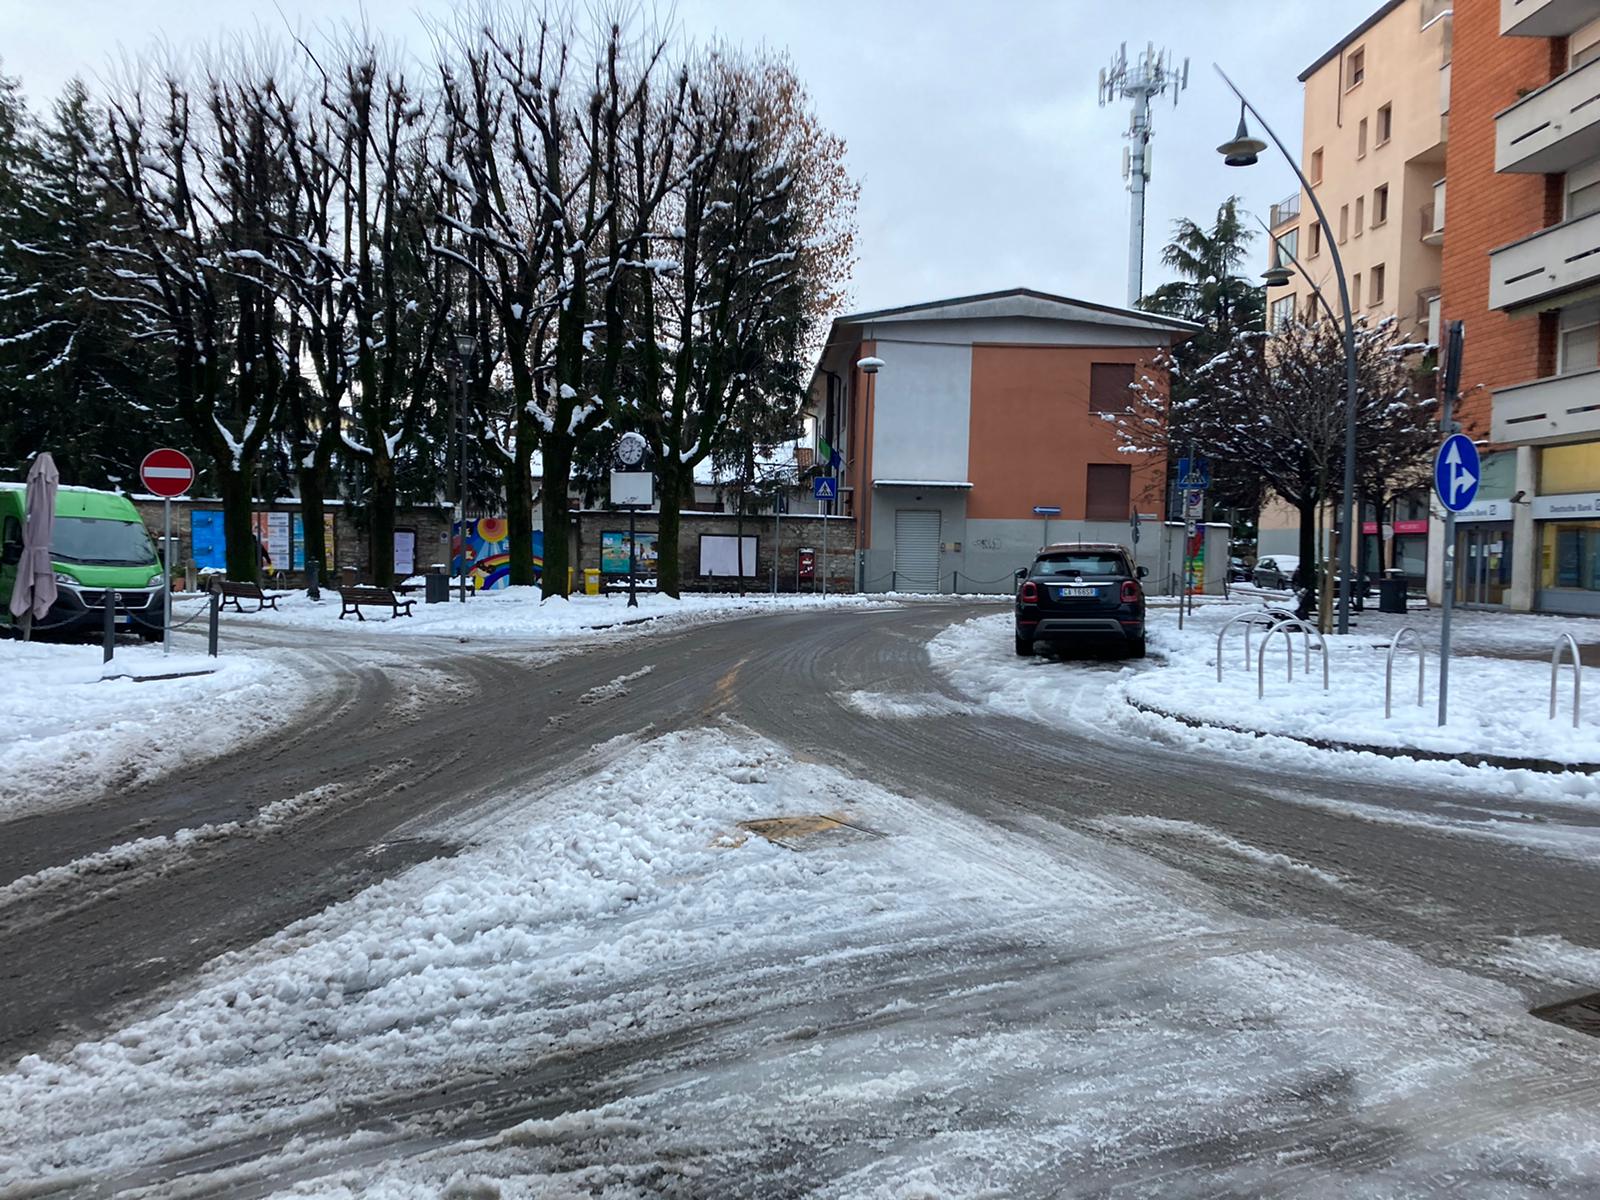 Saronno, ghiaccio su strade e marciapiedi: scivola e finisce all’ospedale